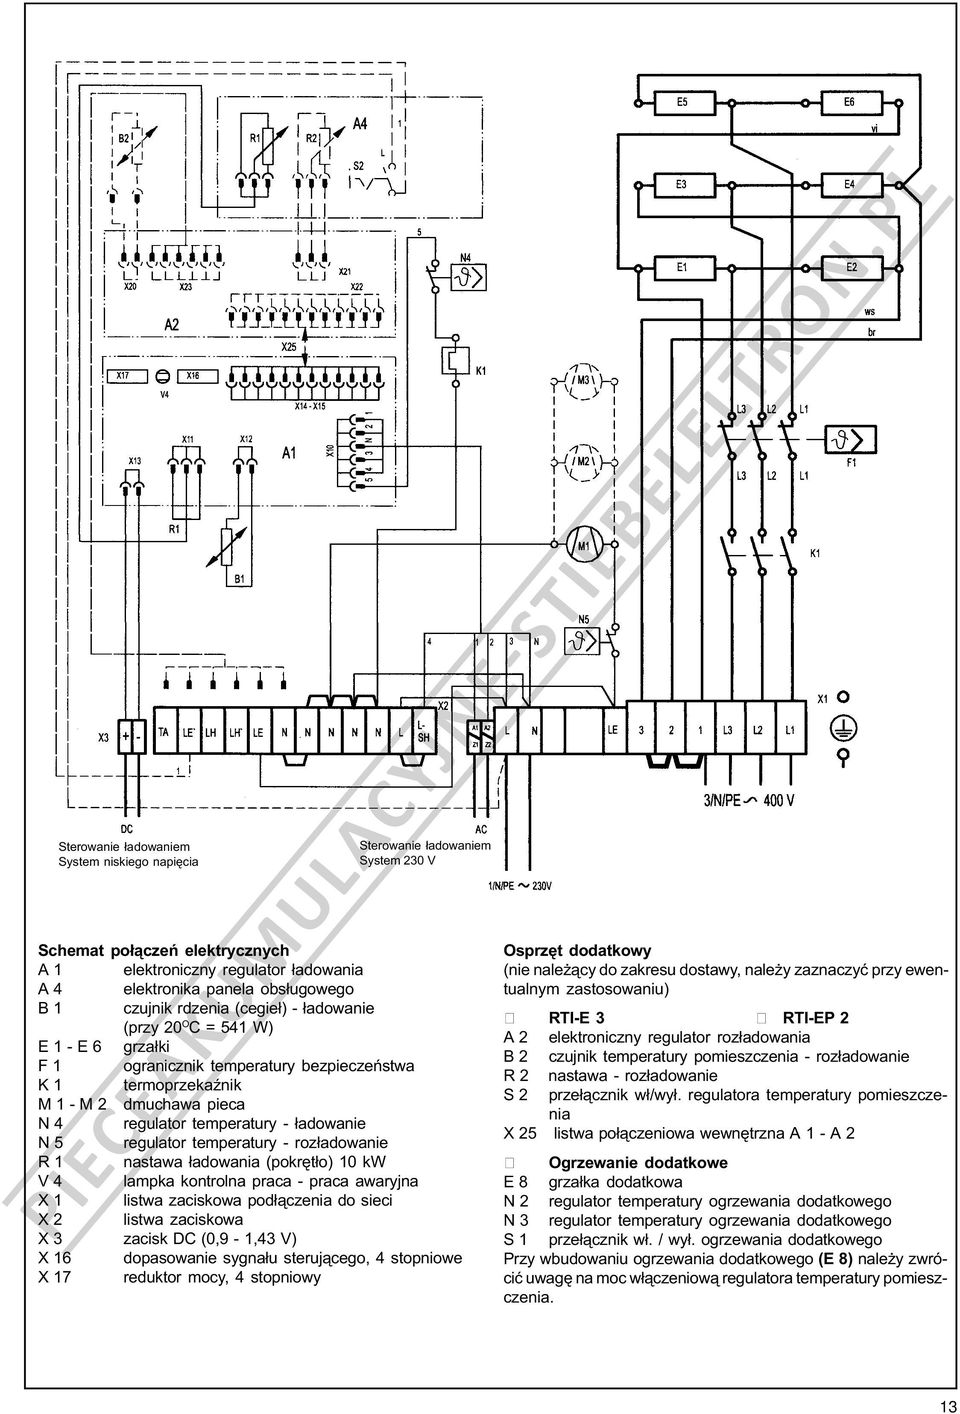 regulator temperatury - roz³adowanie R 1 nastawa ³adowania (pokrêt³o) 10 kw V 4 lampka kontrolna praca - praca awaryjna X 1 listwa zaciskowa pod³¹czenia do sieci X 2 listwa zaciskowa X 3 zacisk DC